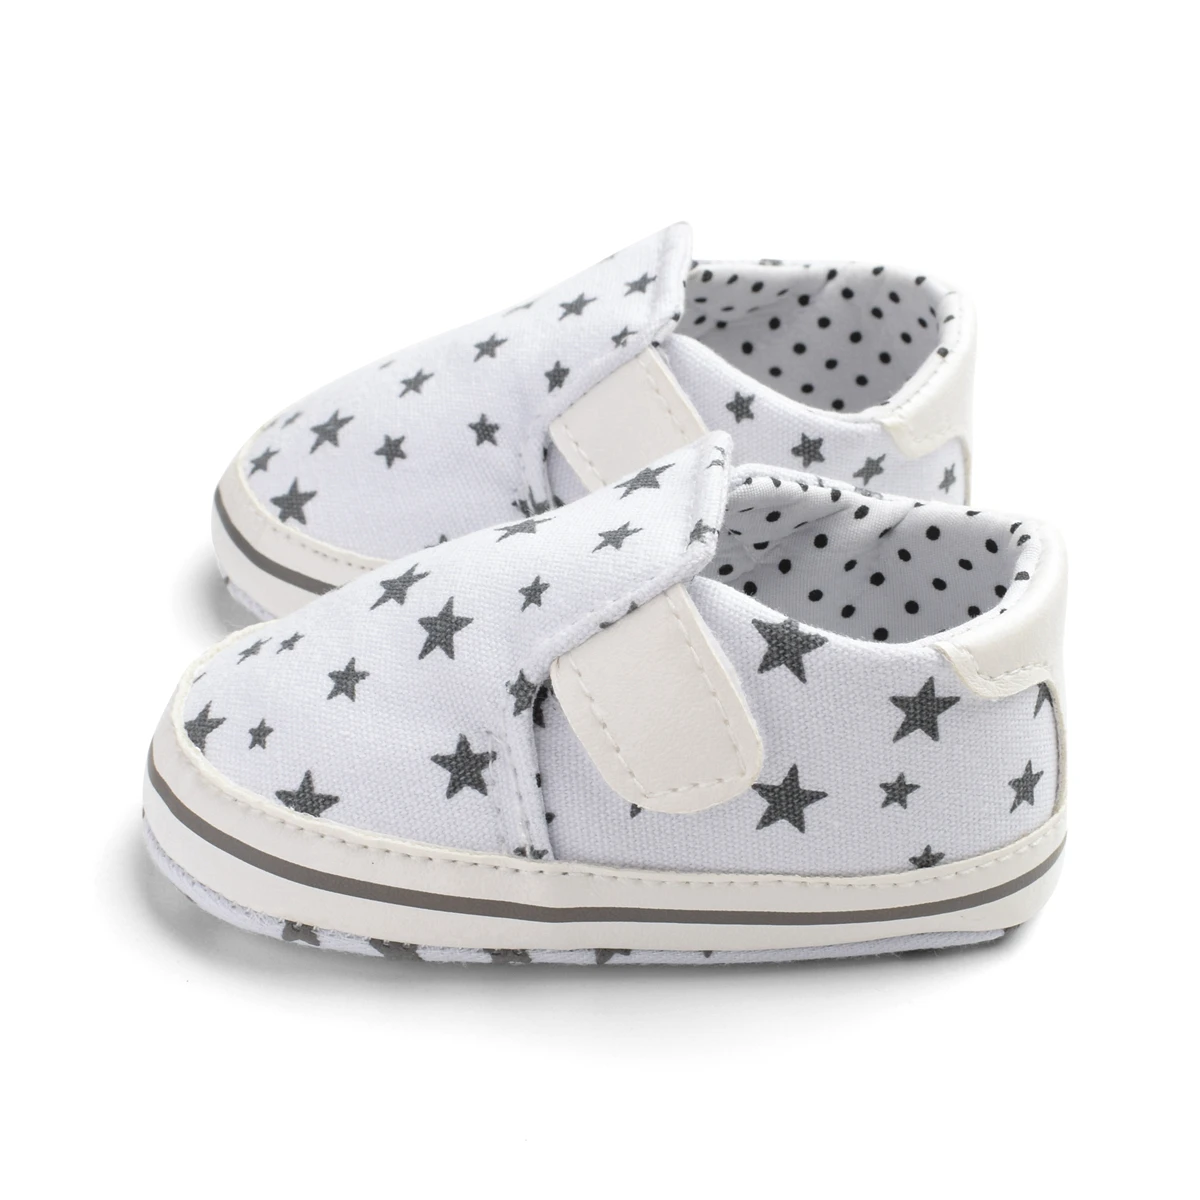 Одежда для малышей мальчиков и девочек Повседневное обувь тканевая с принтом со звездой для детей, начинающих ходить мягкая подошва кроссовки